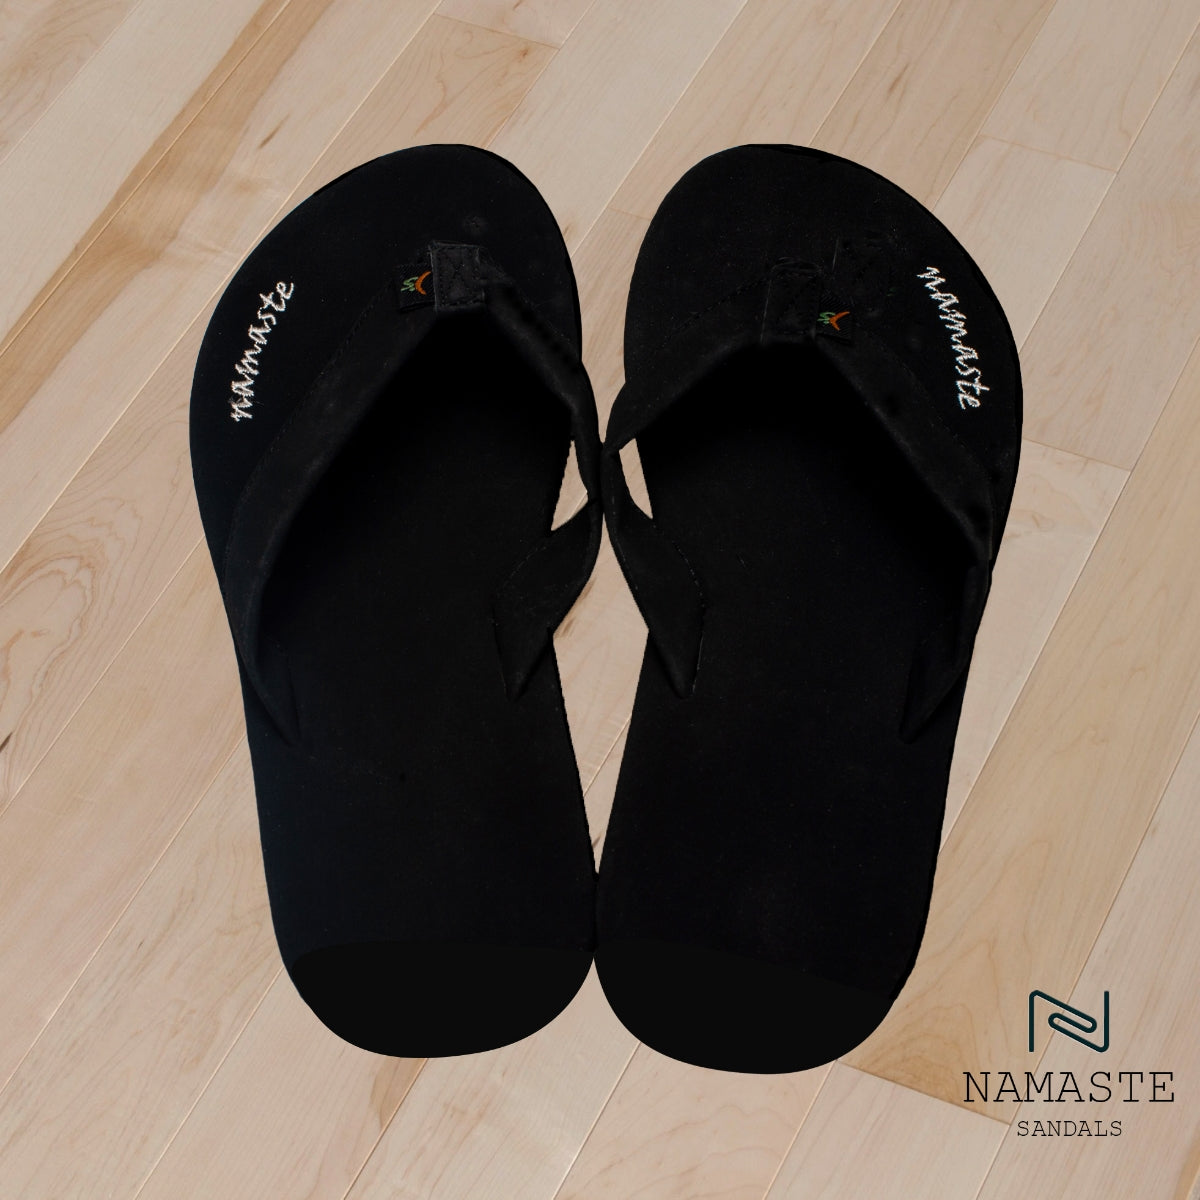 Namaste Sandals